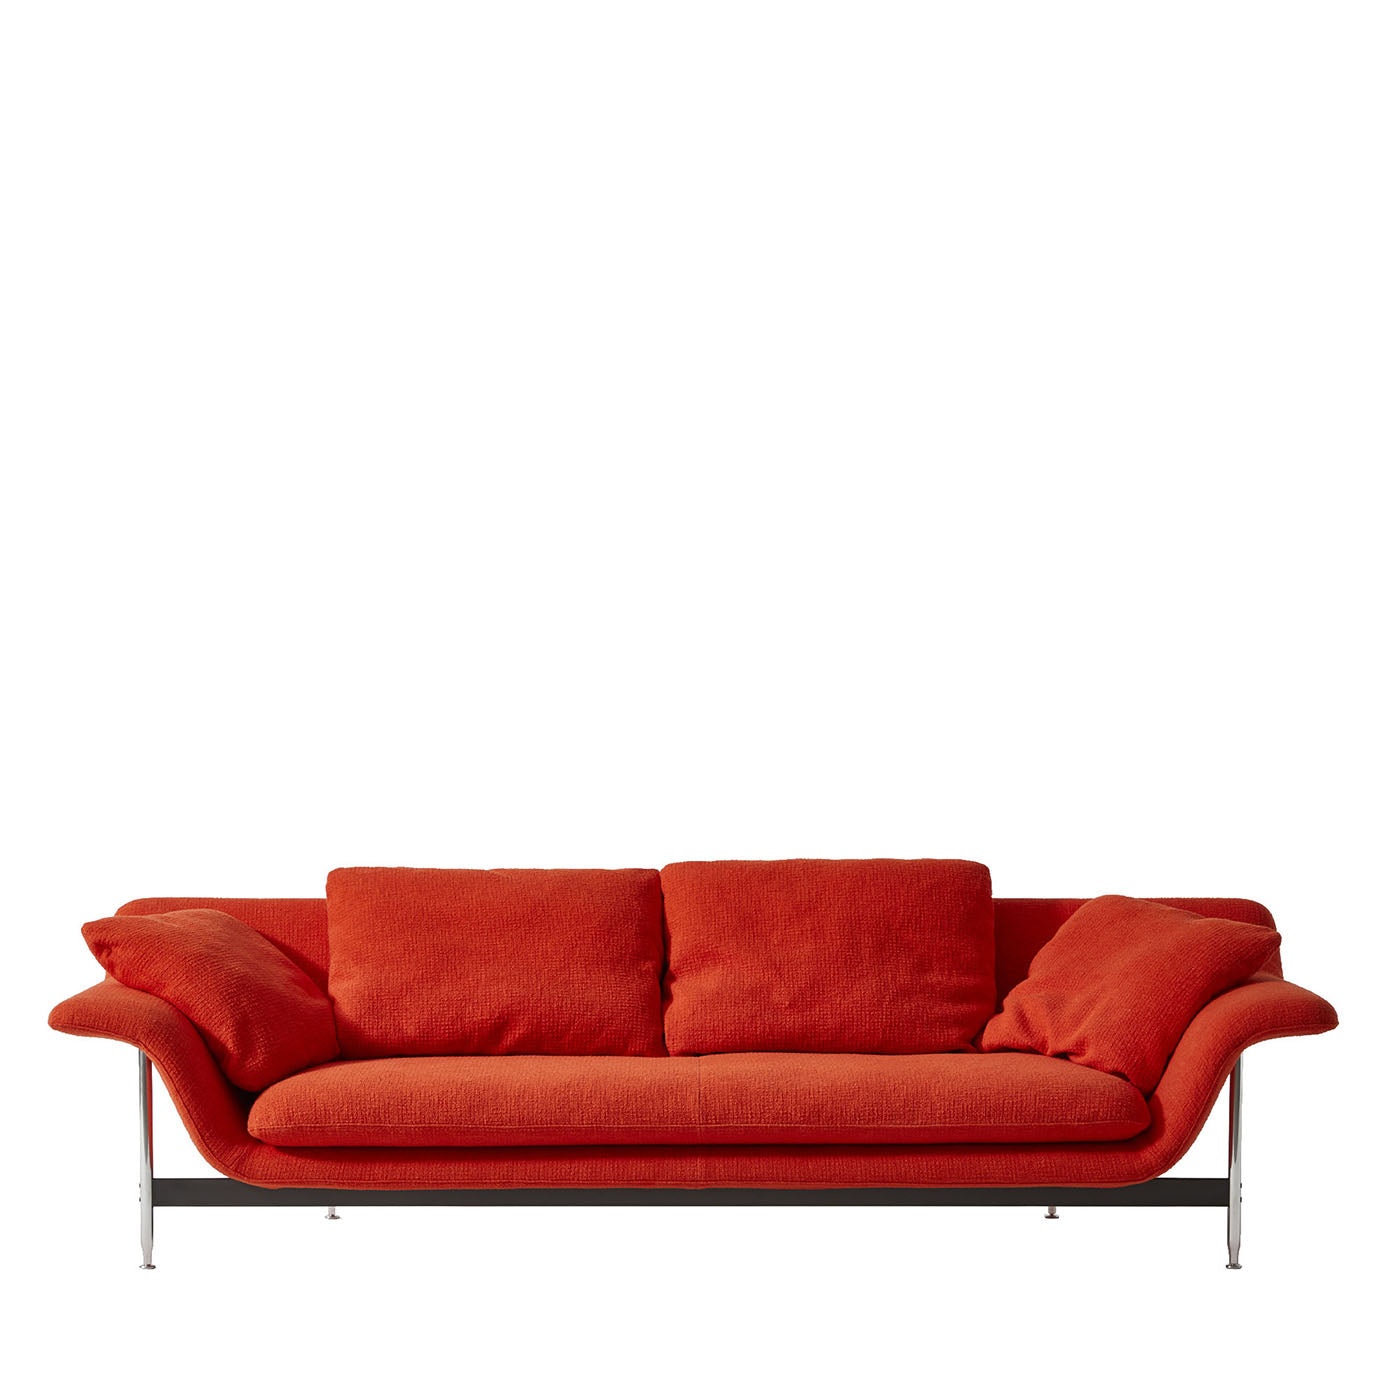 Esosoft 3-sitzer orange sofa von Antonio Citterio - Hauptansicht